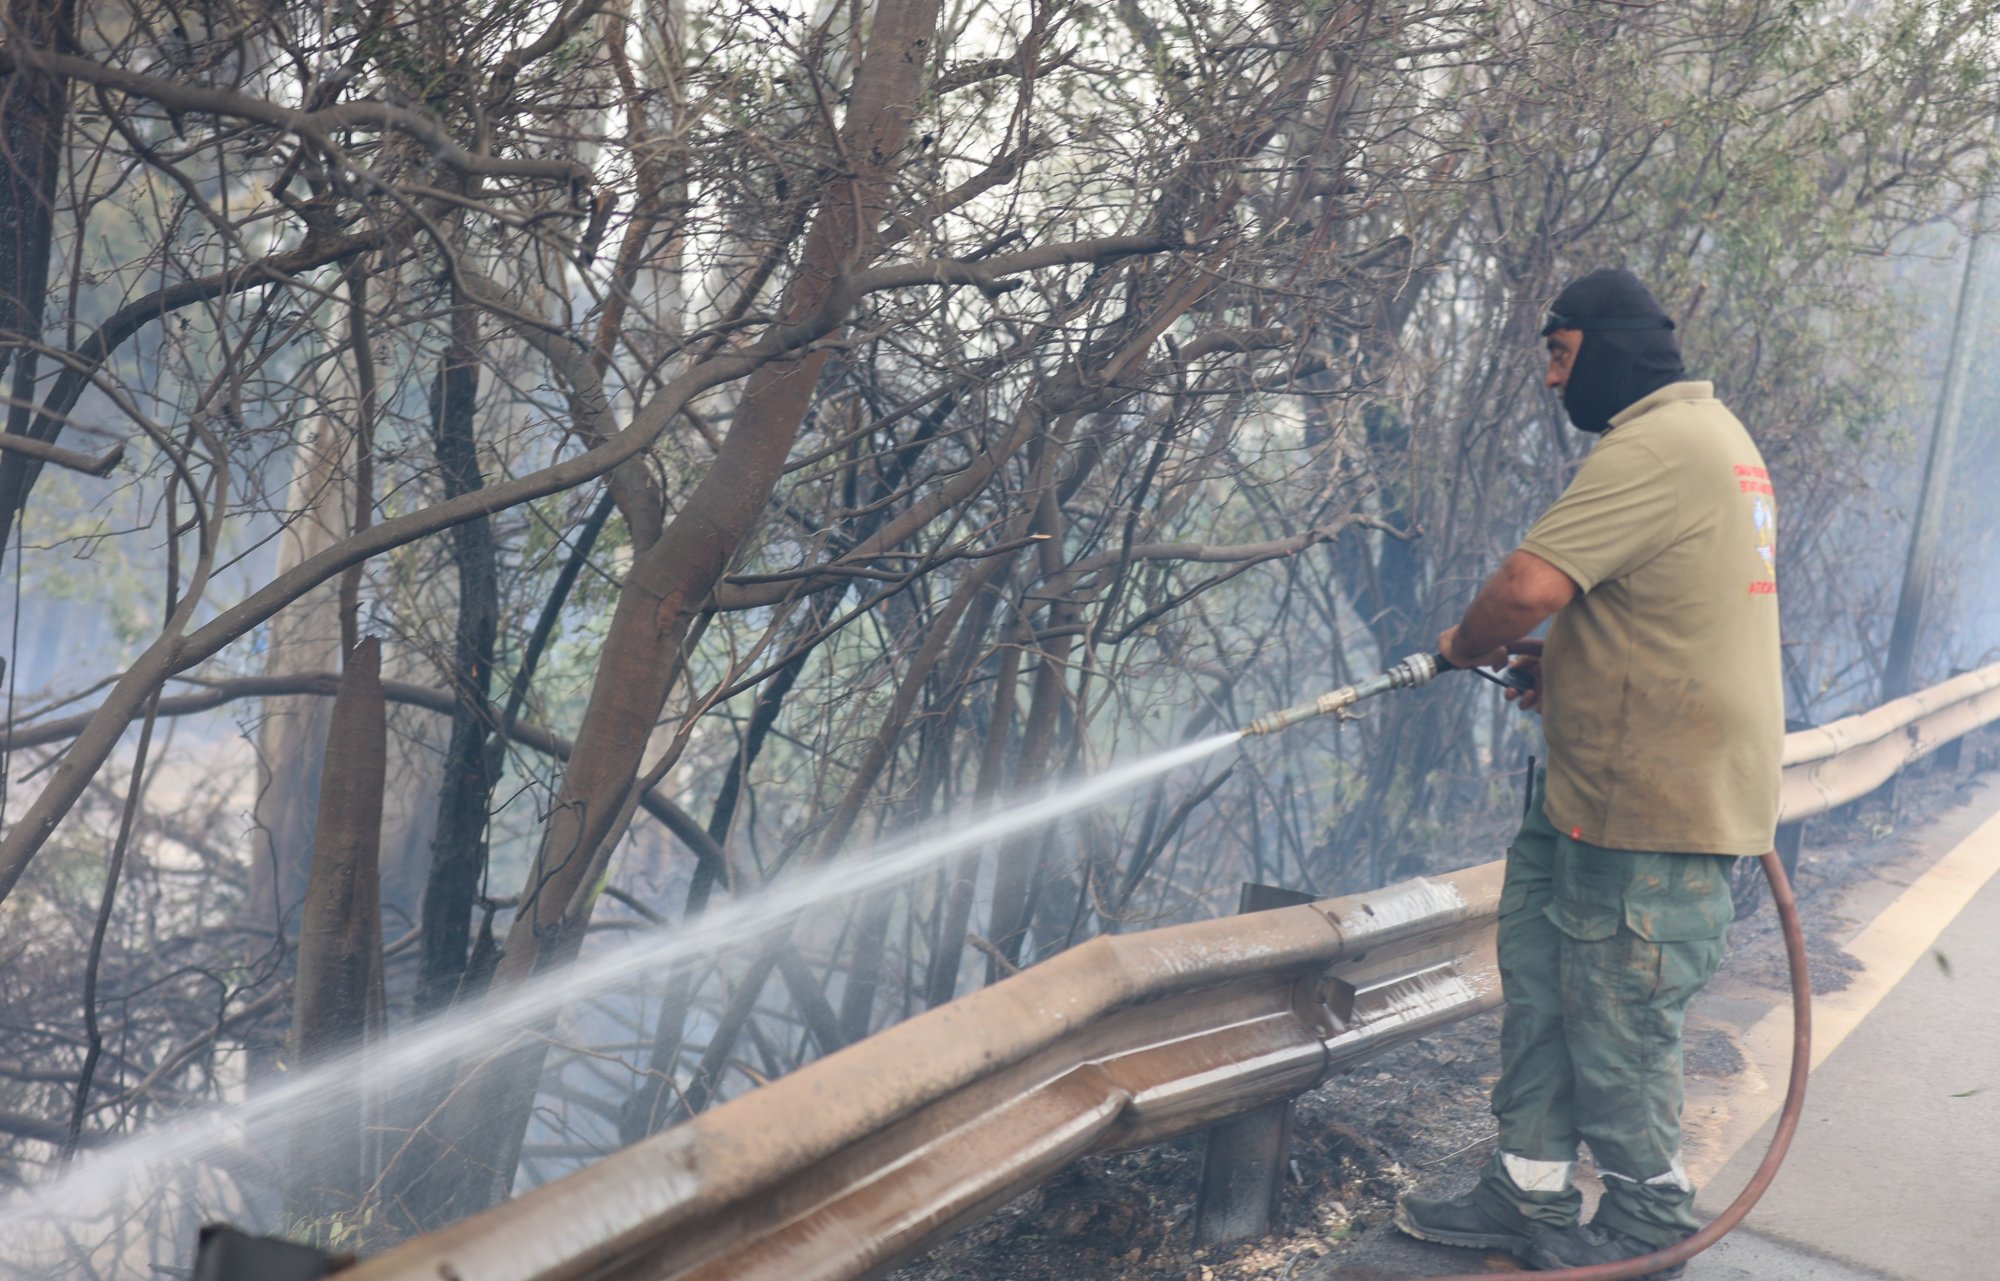 Νέα Αριστερά: Η πυρκαγιά στα Χανιά ακόμη μια προειδοποίηση - Εθνική προτεραιότητα η πολιτική προστασία